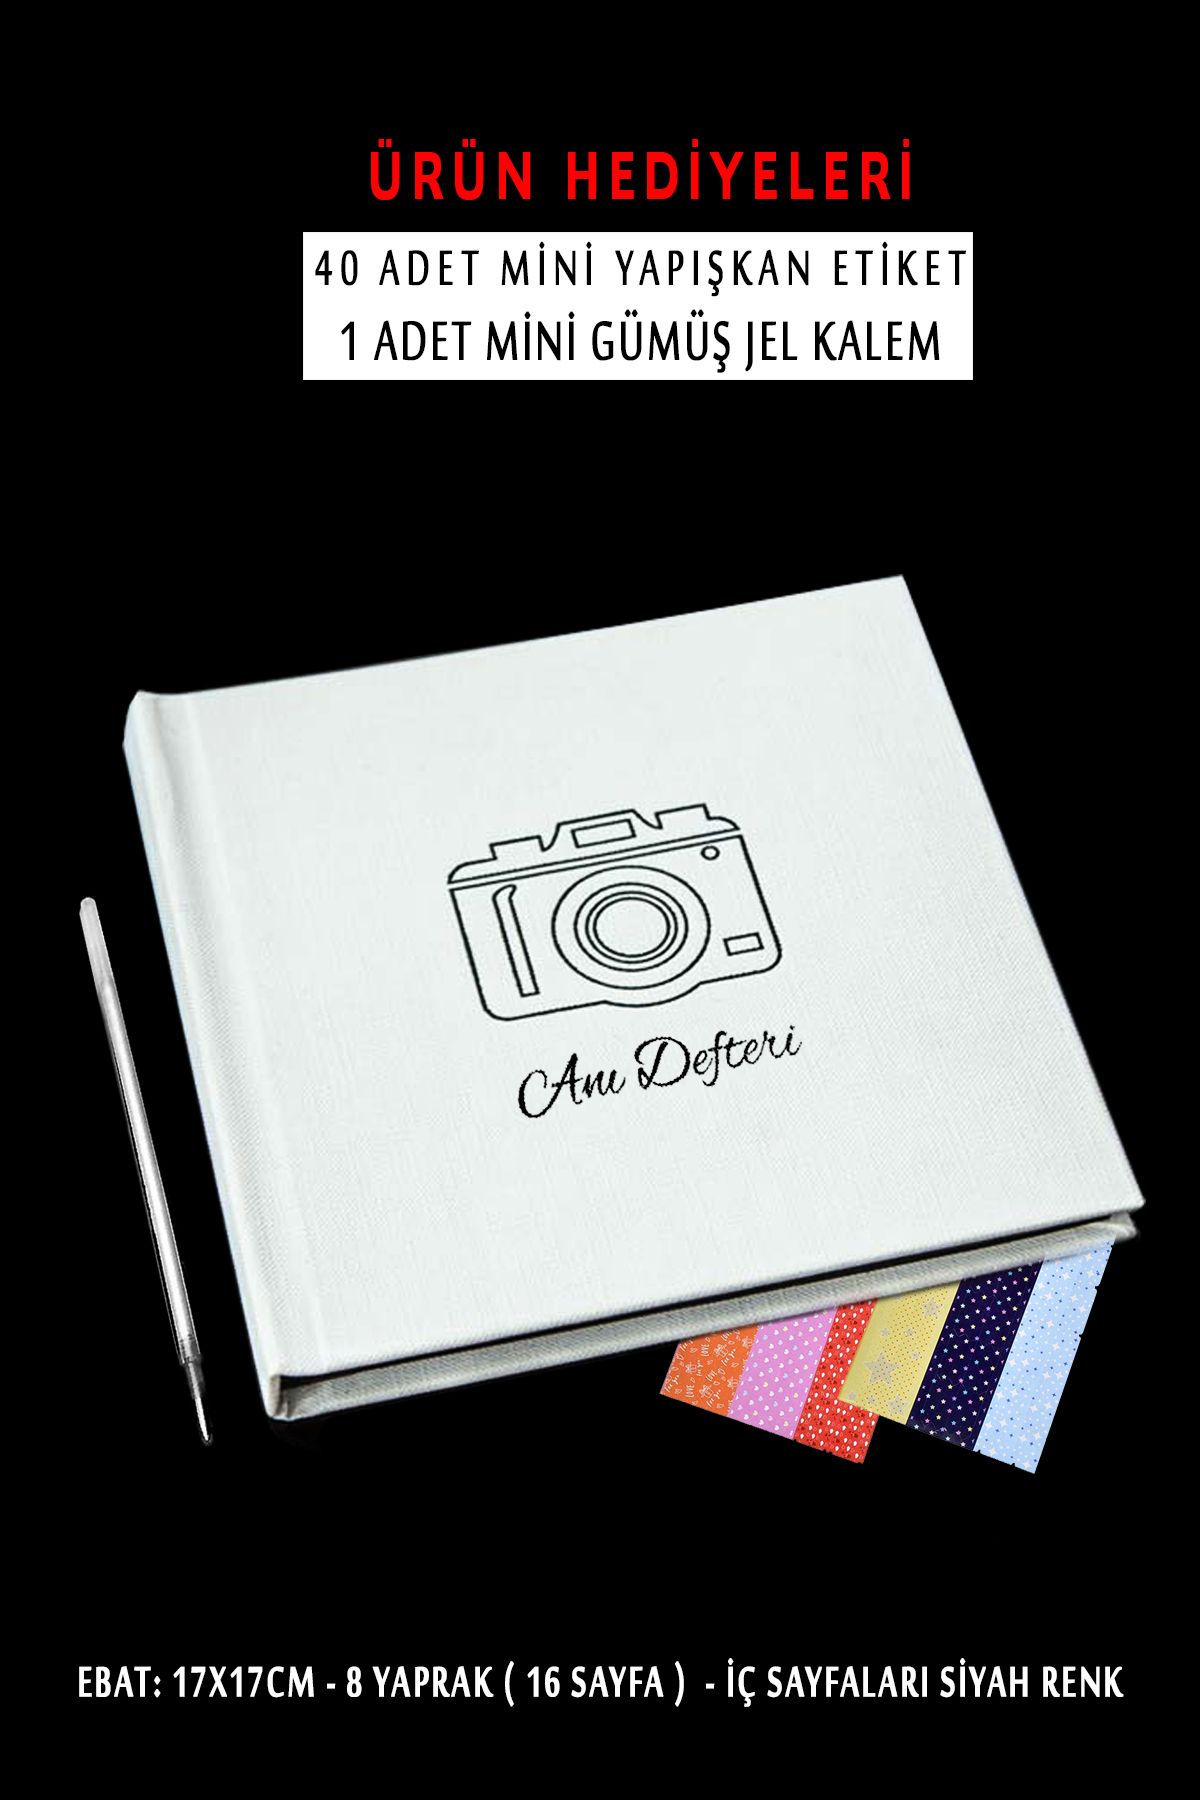 yhfoto Beyaz Anı Defteri - Kalemli Anı Albümü - Sticker ve Kalem hediye - İçi siyah albüm